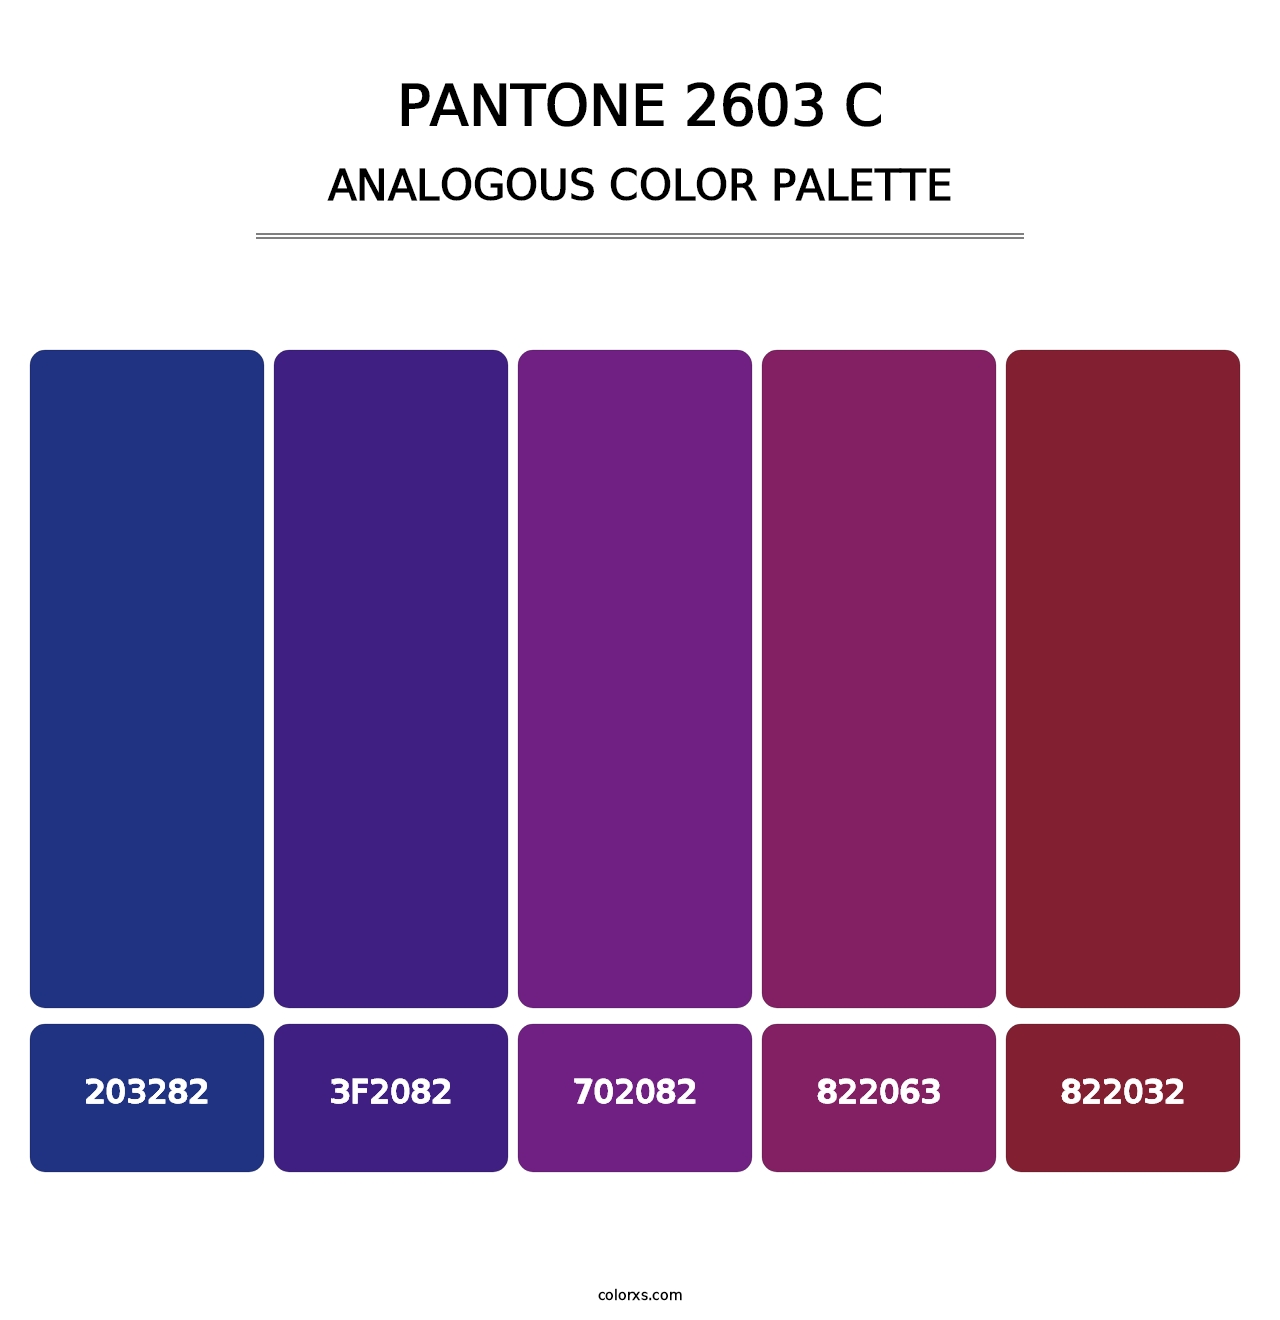 PANTONE 2603 C - Analogous Color Palette